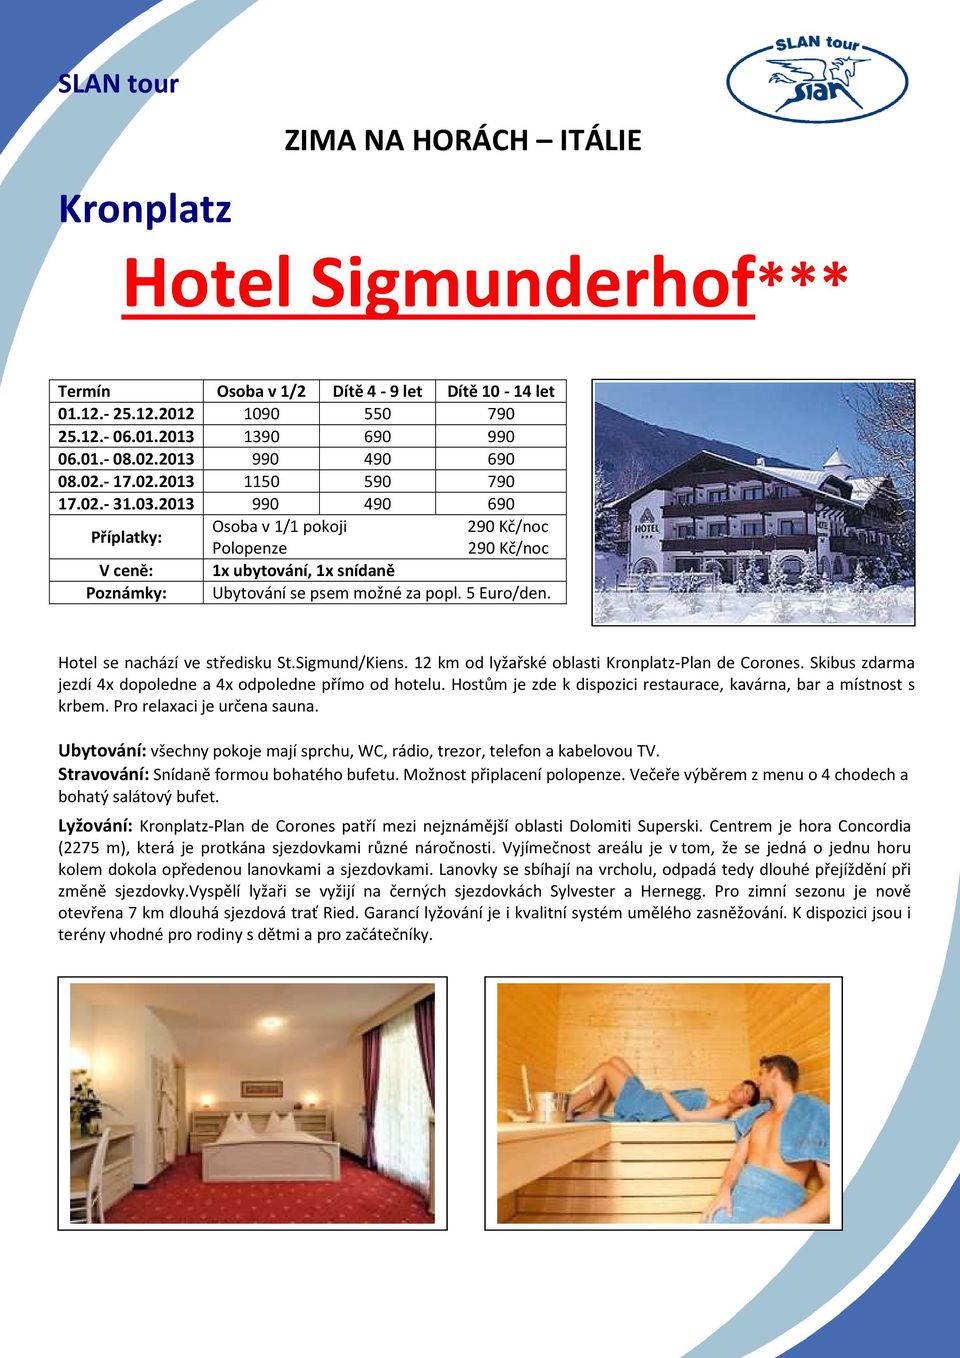 5 Euro/den. Hotel se nachází ve středisku St.Sigmund/Kiens. 12 km od lyžařské oblasti Kronplatz-Plan de Corones. Skibus zdarma jezdí 4x dopoledne a 4x odpoledne přímo od hotelu.